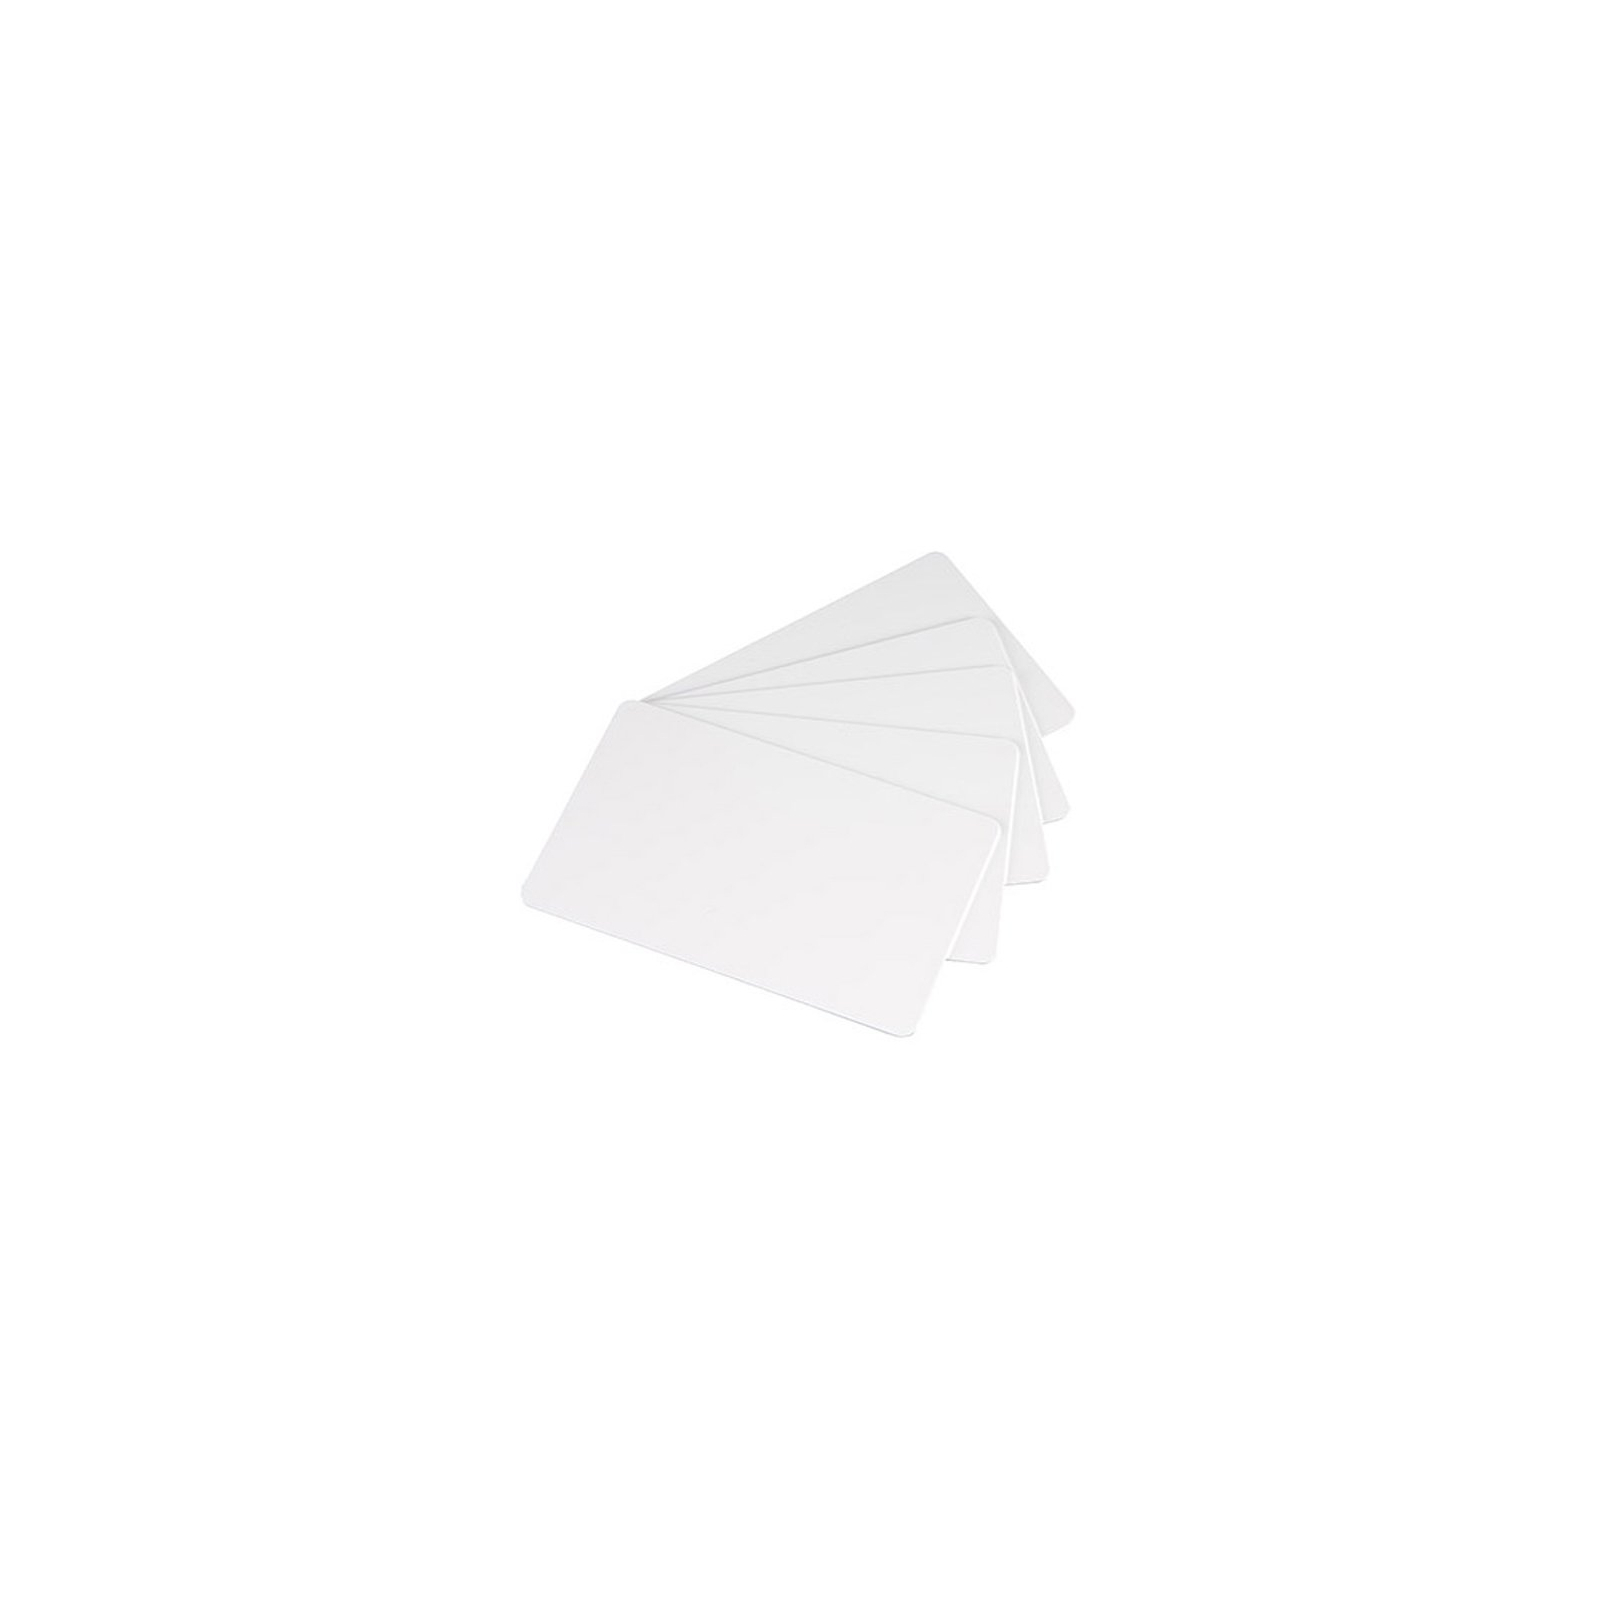 Карточка пластиковая чистая Evolis C4001 100 шт (C4001-100)